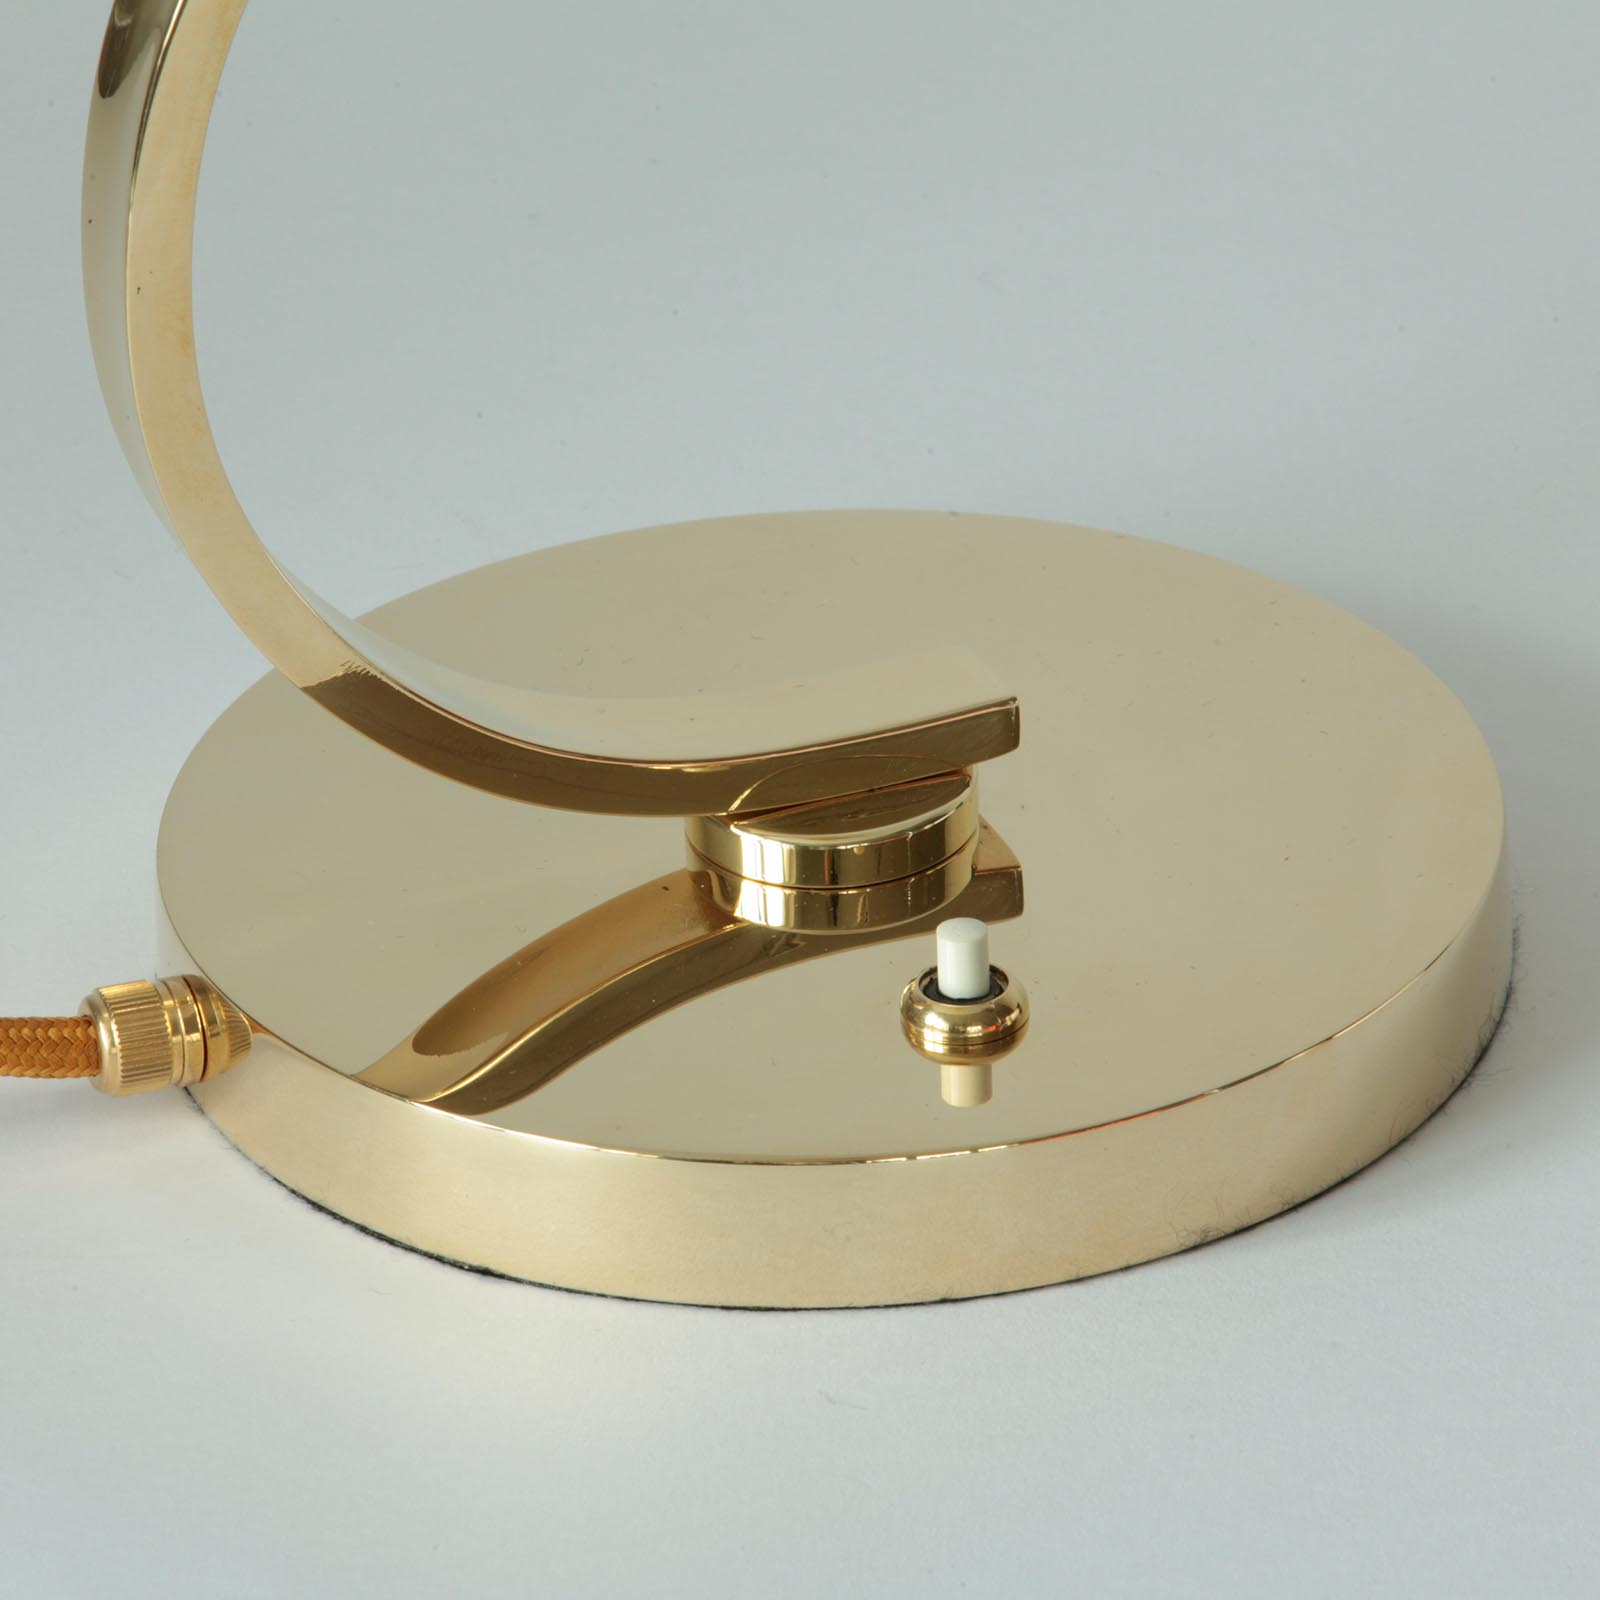 Kleine Messing-Tischlampe mit Kegel-Glasschirm: Messing poliert, lackiert